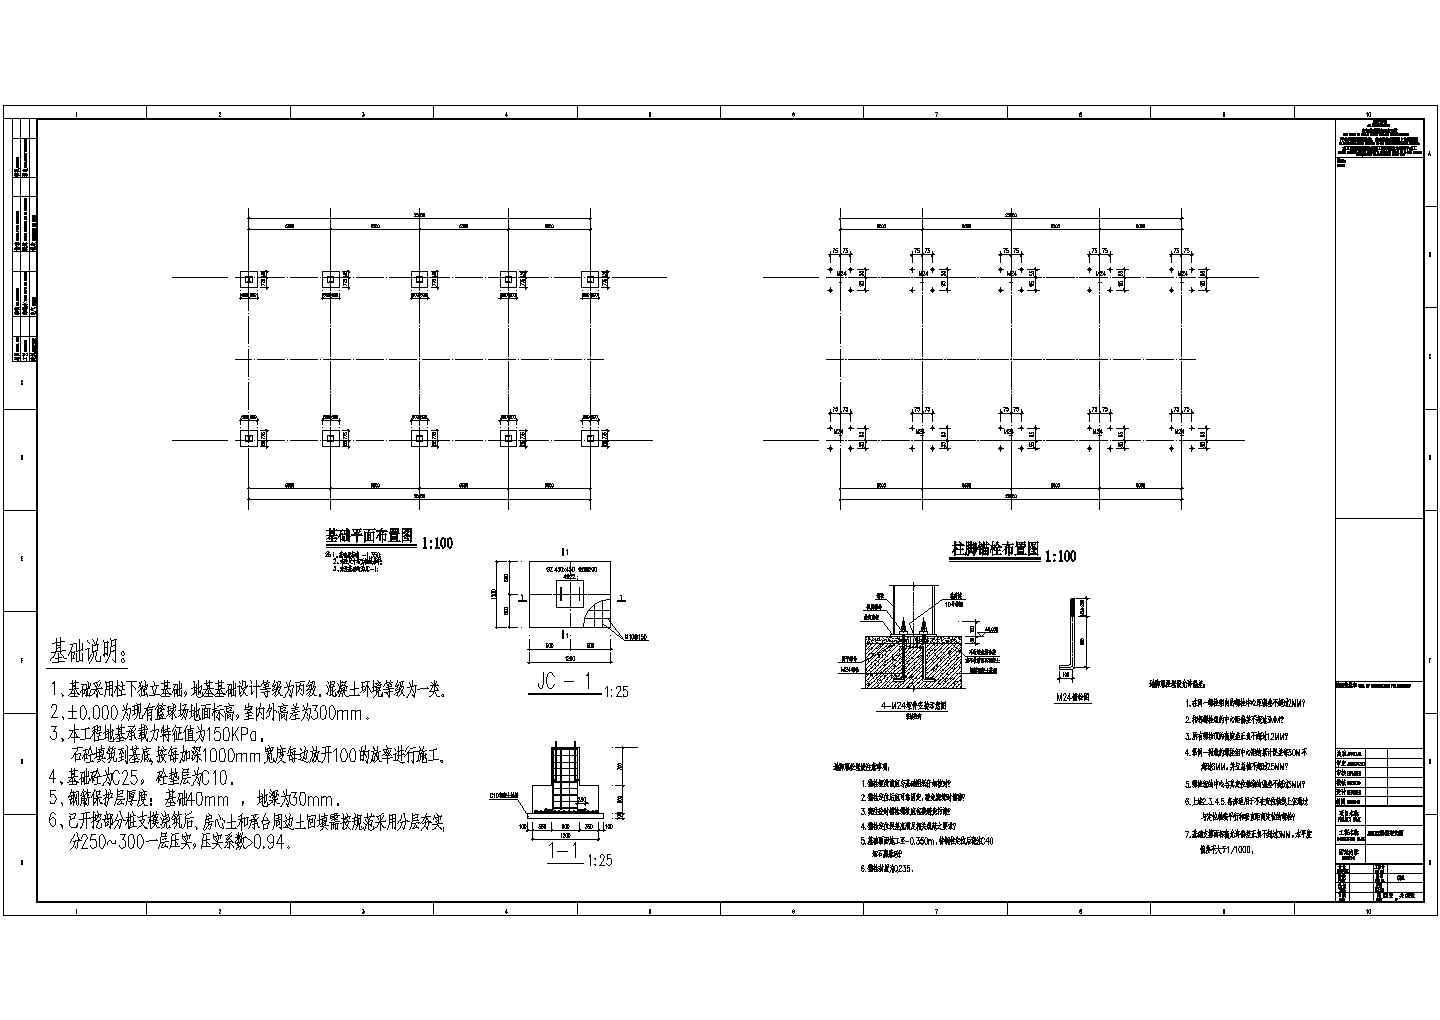 20x15轻型门式钢架结构施工图